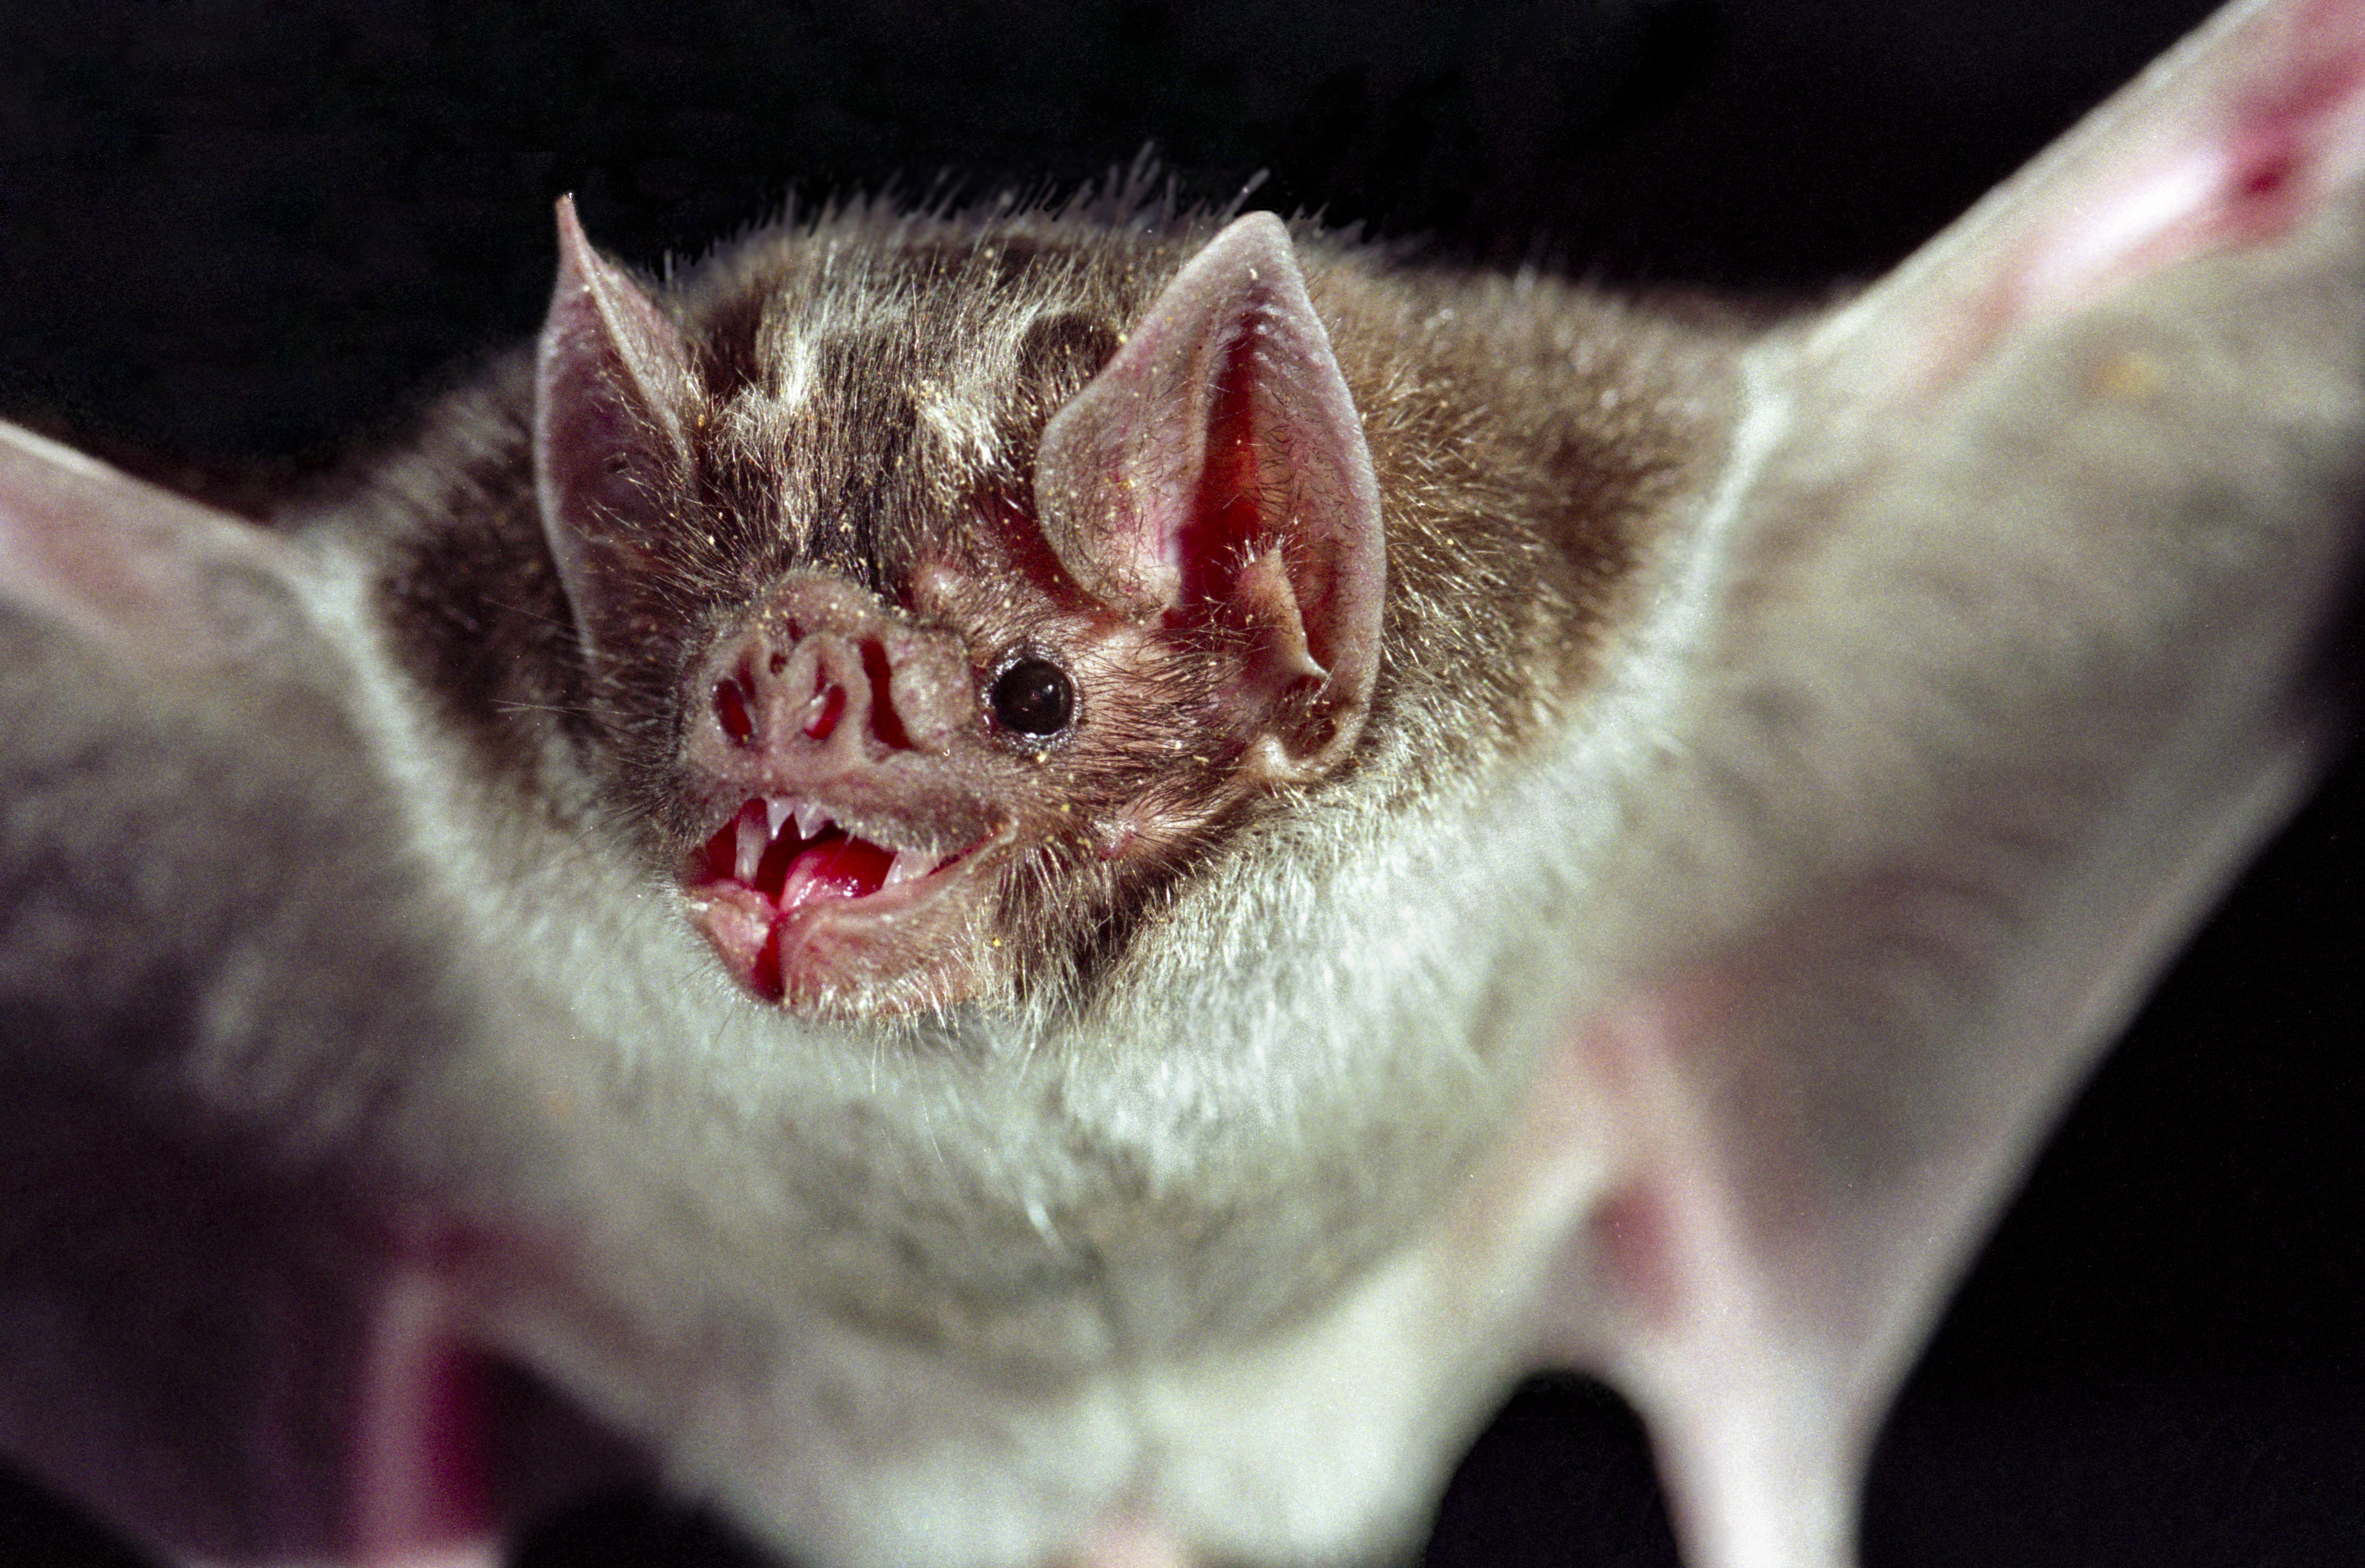 A close-up of a vampire bat.